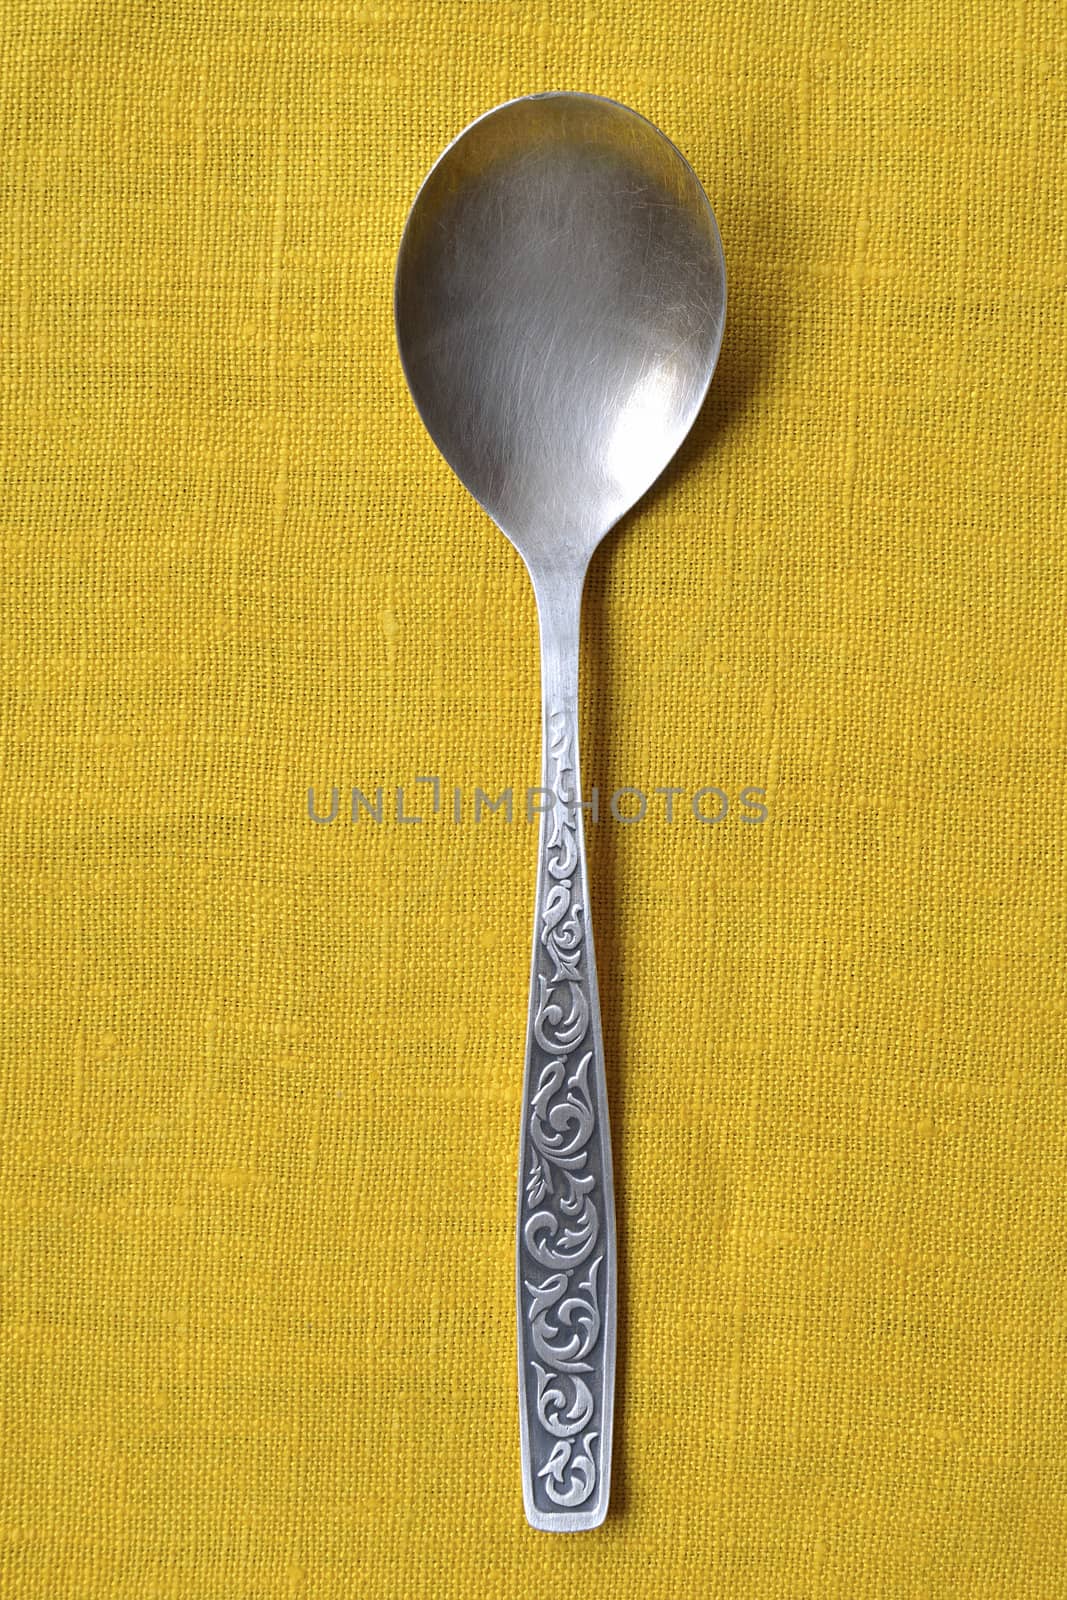 silver spoon by yuriz